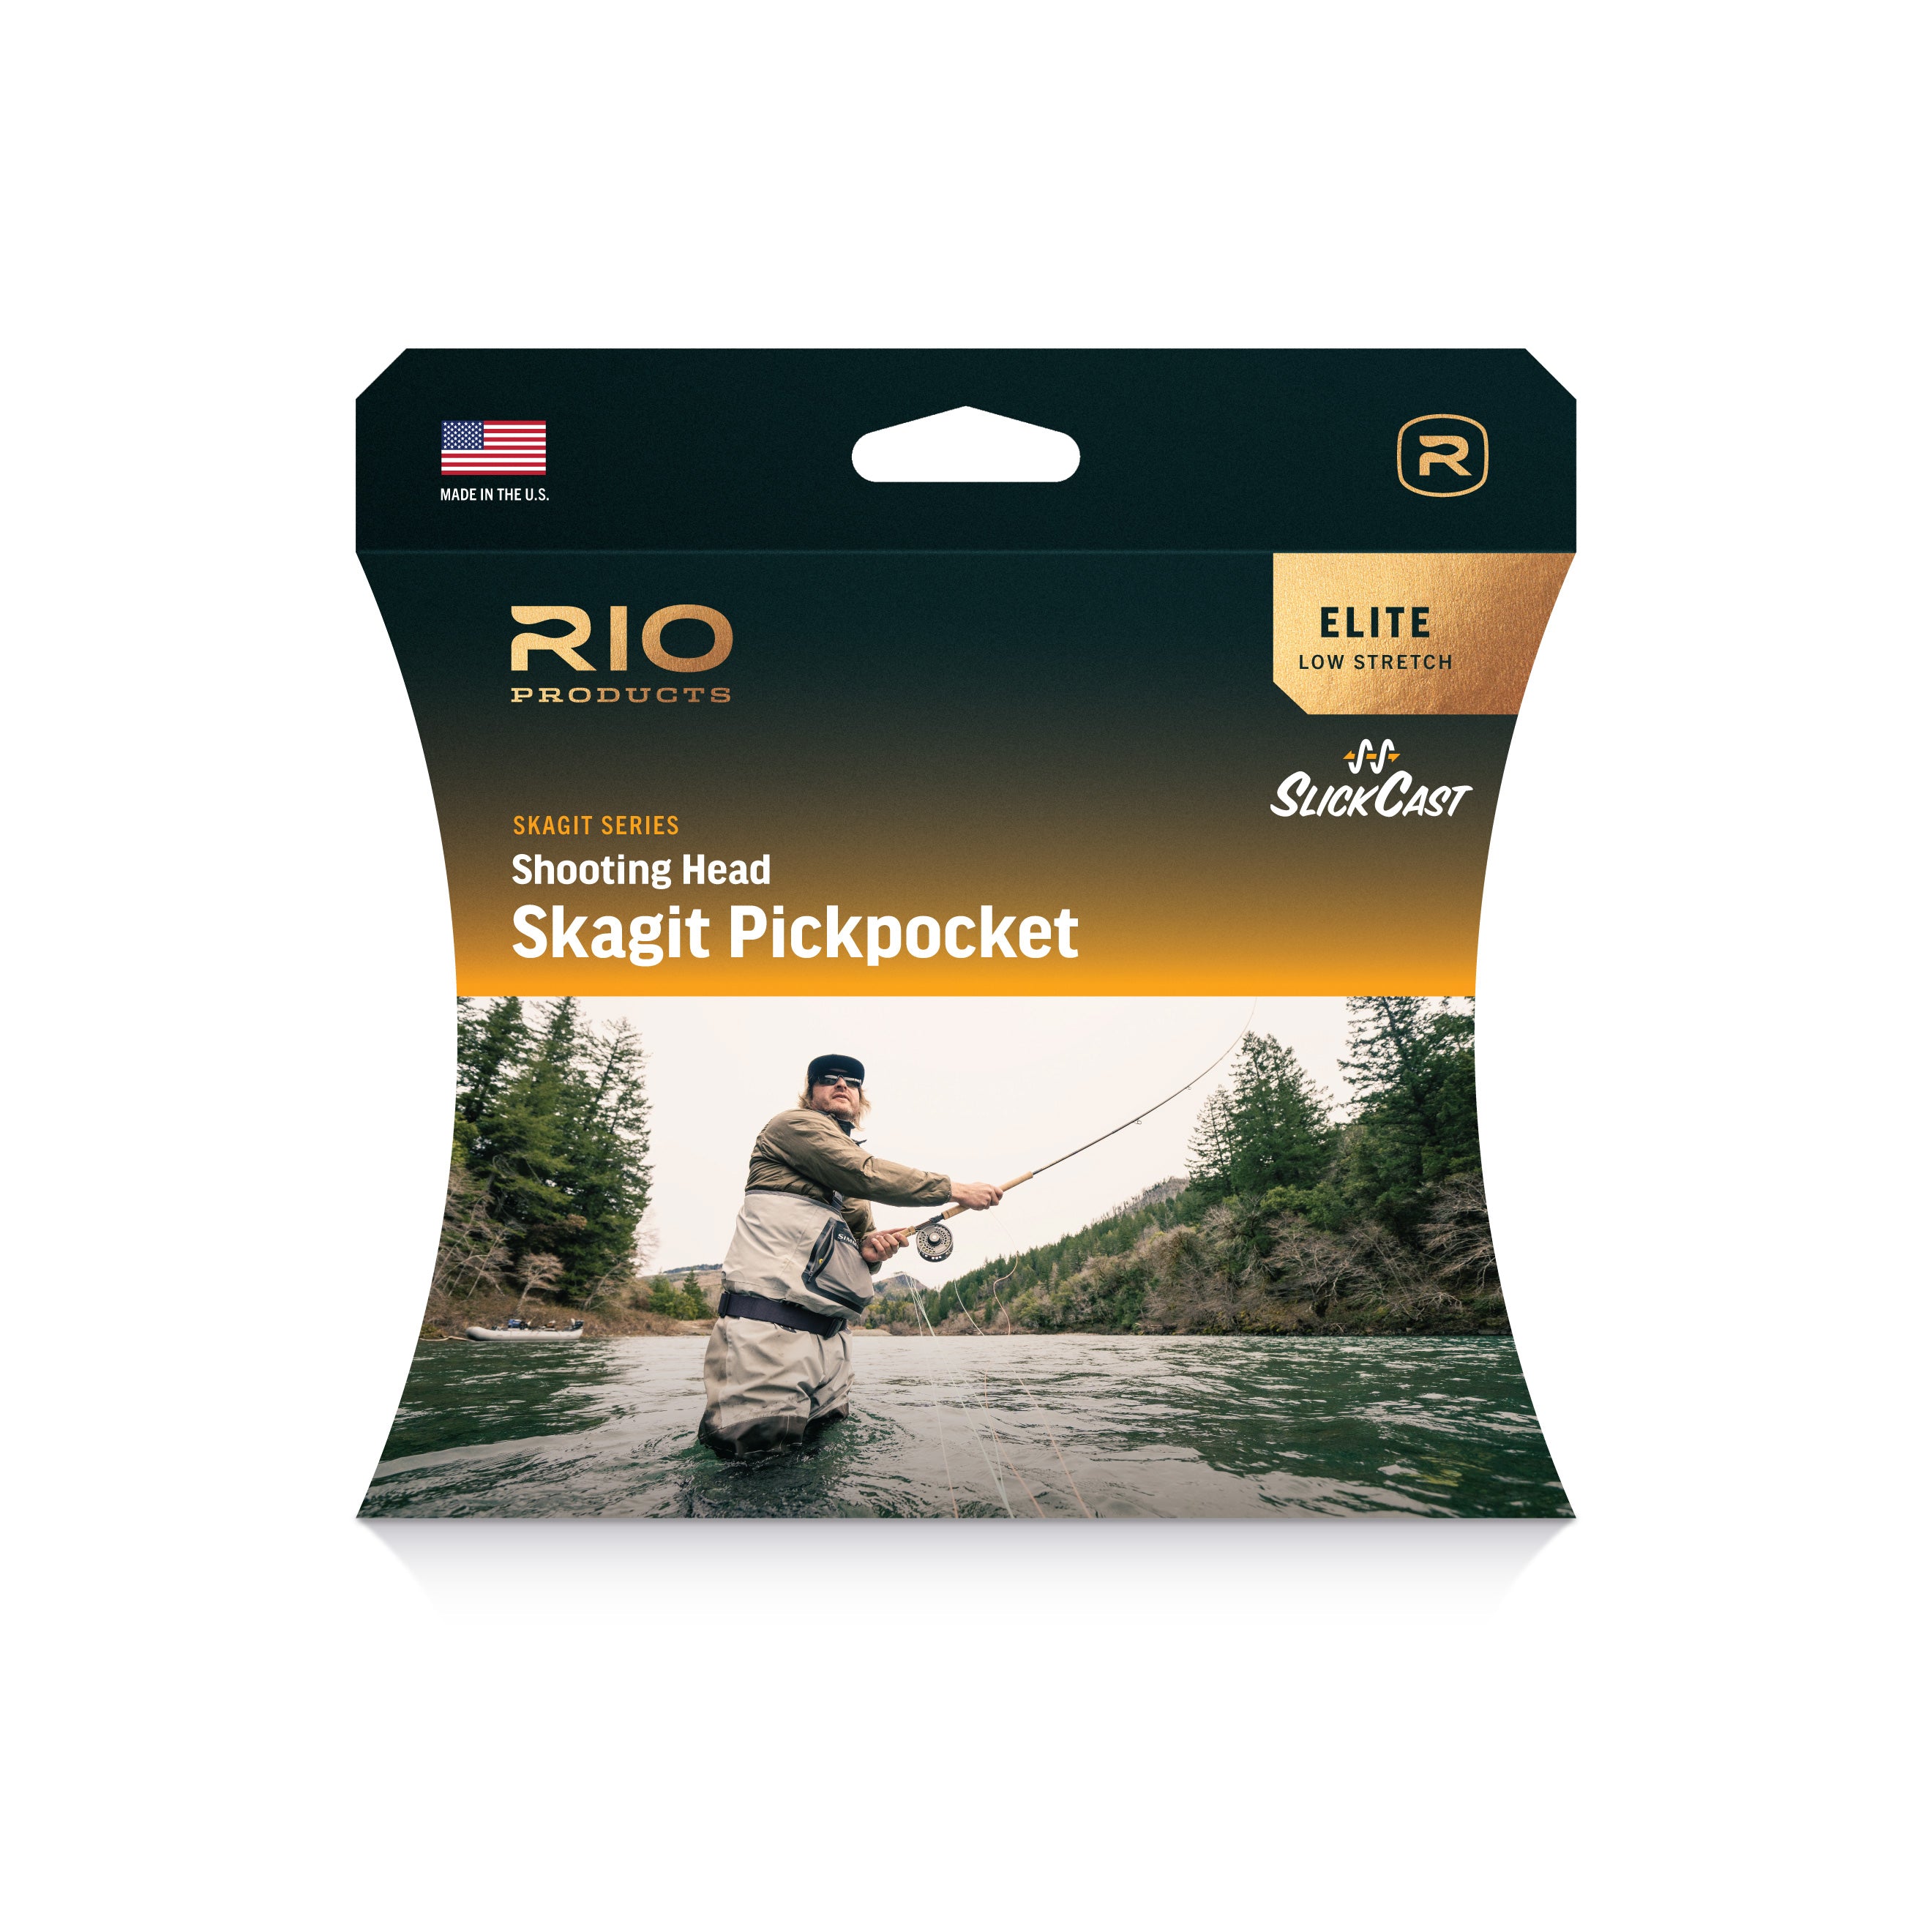 RIO Elite Skagit Pickpocket Shooting Head - NEW!